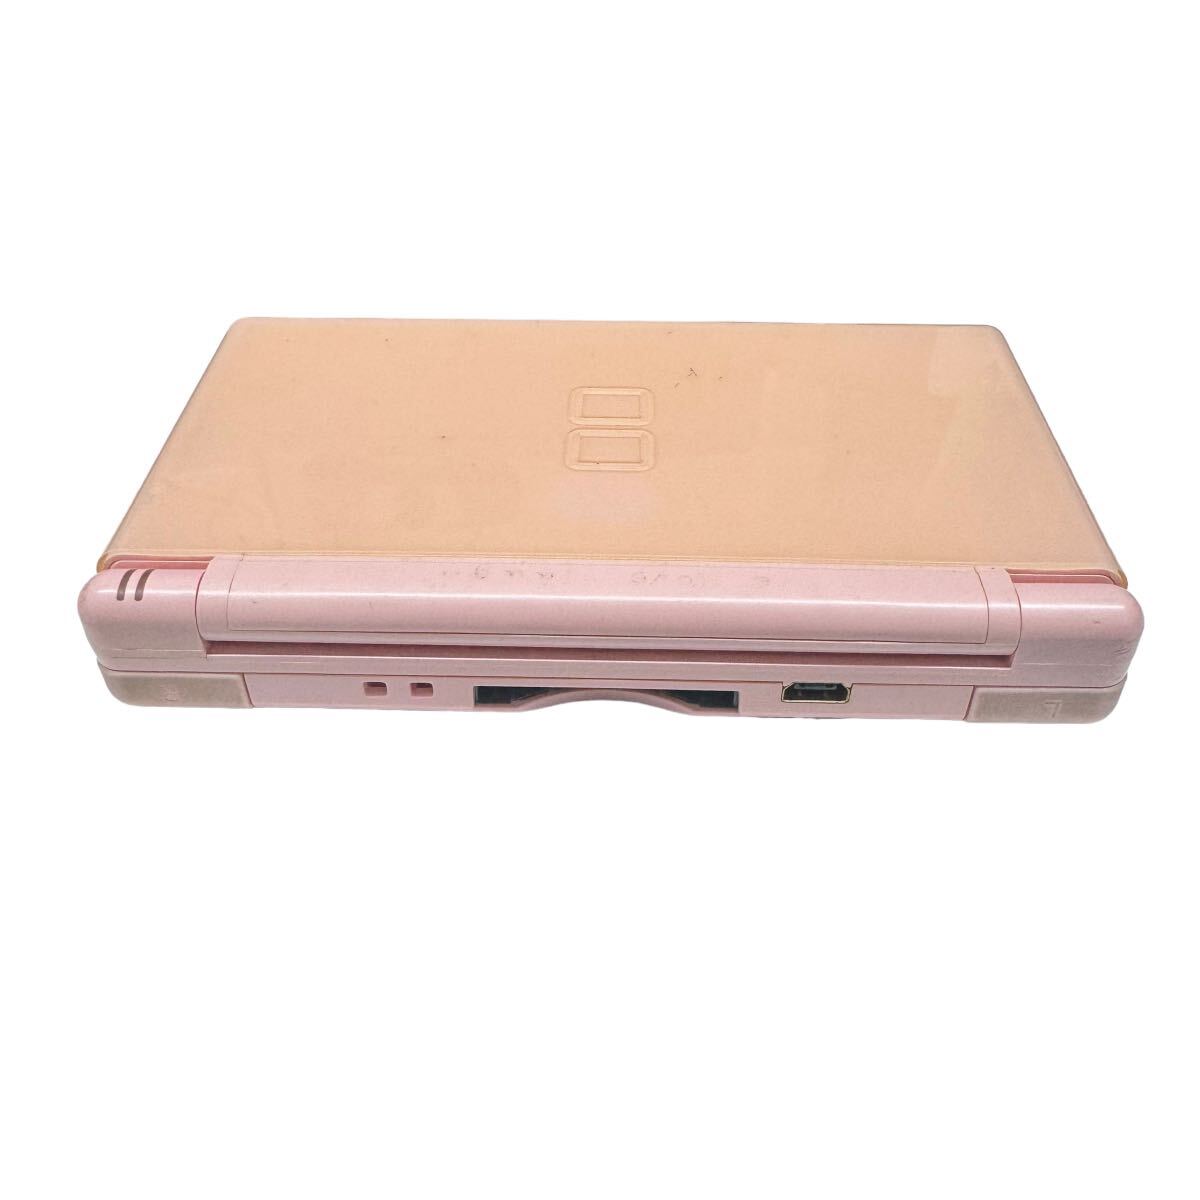 Nintendo DS Lite 任天堂 ニンテンドーDS Nintendo DS Lite USG-001 ピンク 本体 ジャンク品 どうぶつの森付属 セット販売 10161の画像5